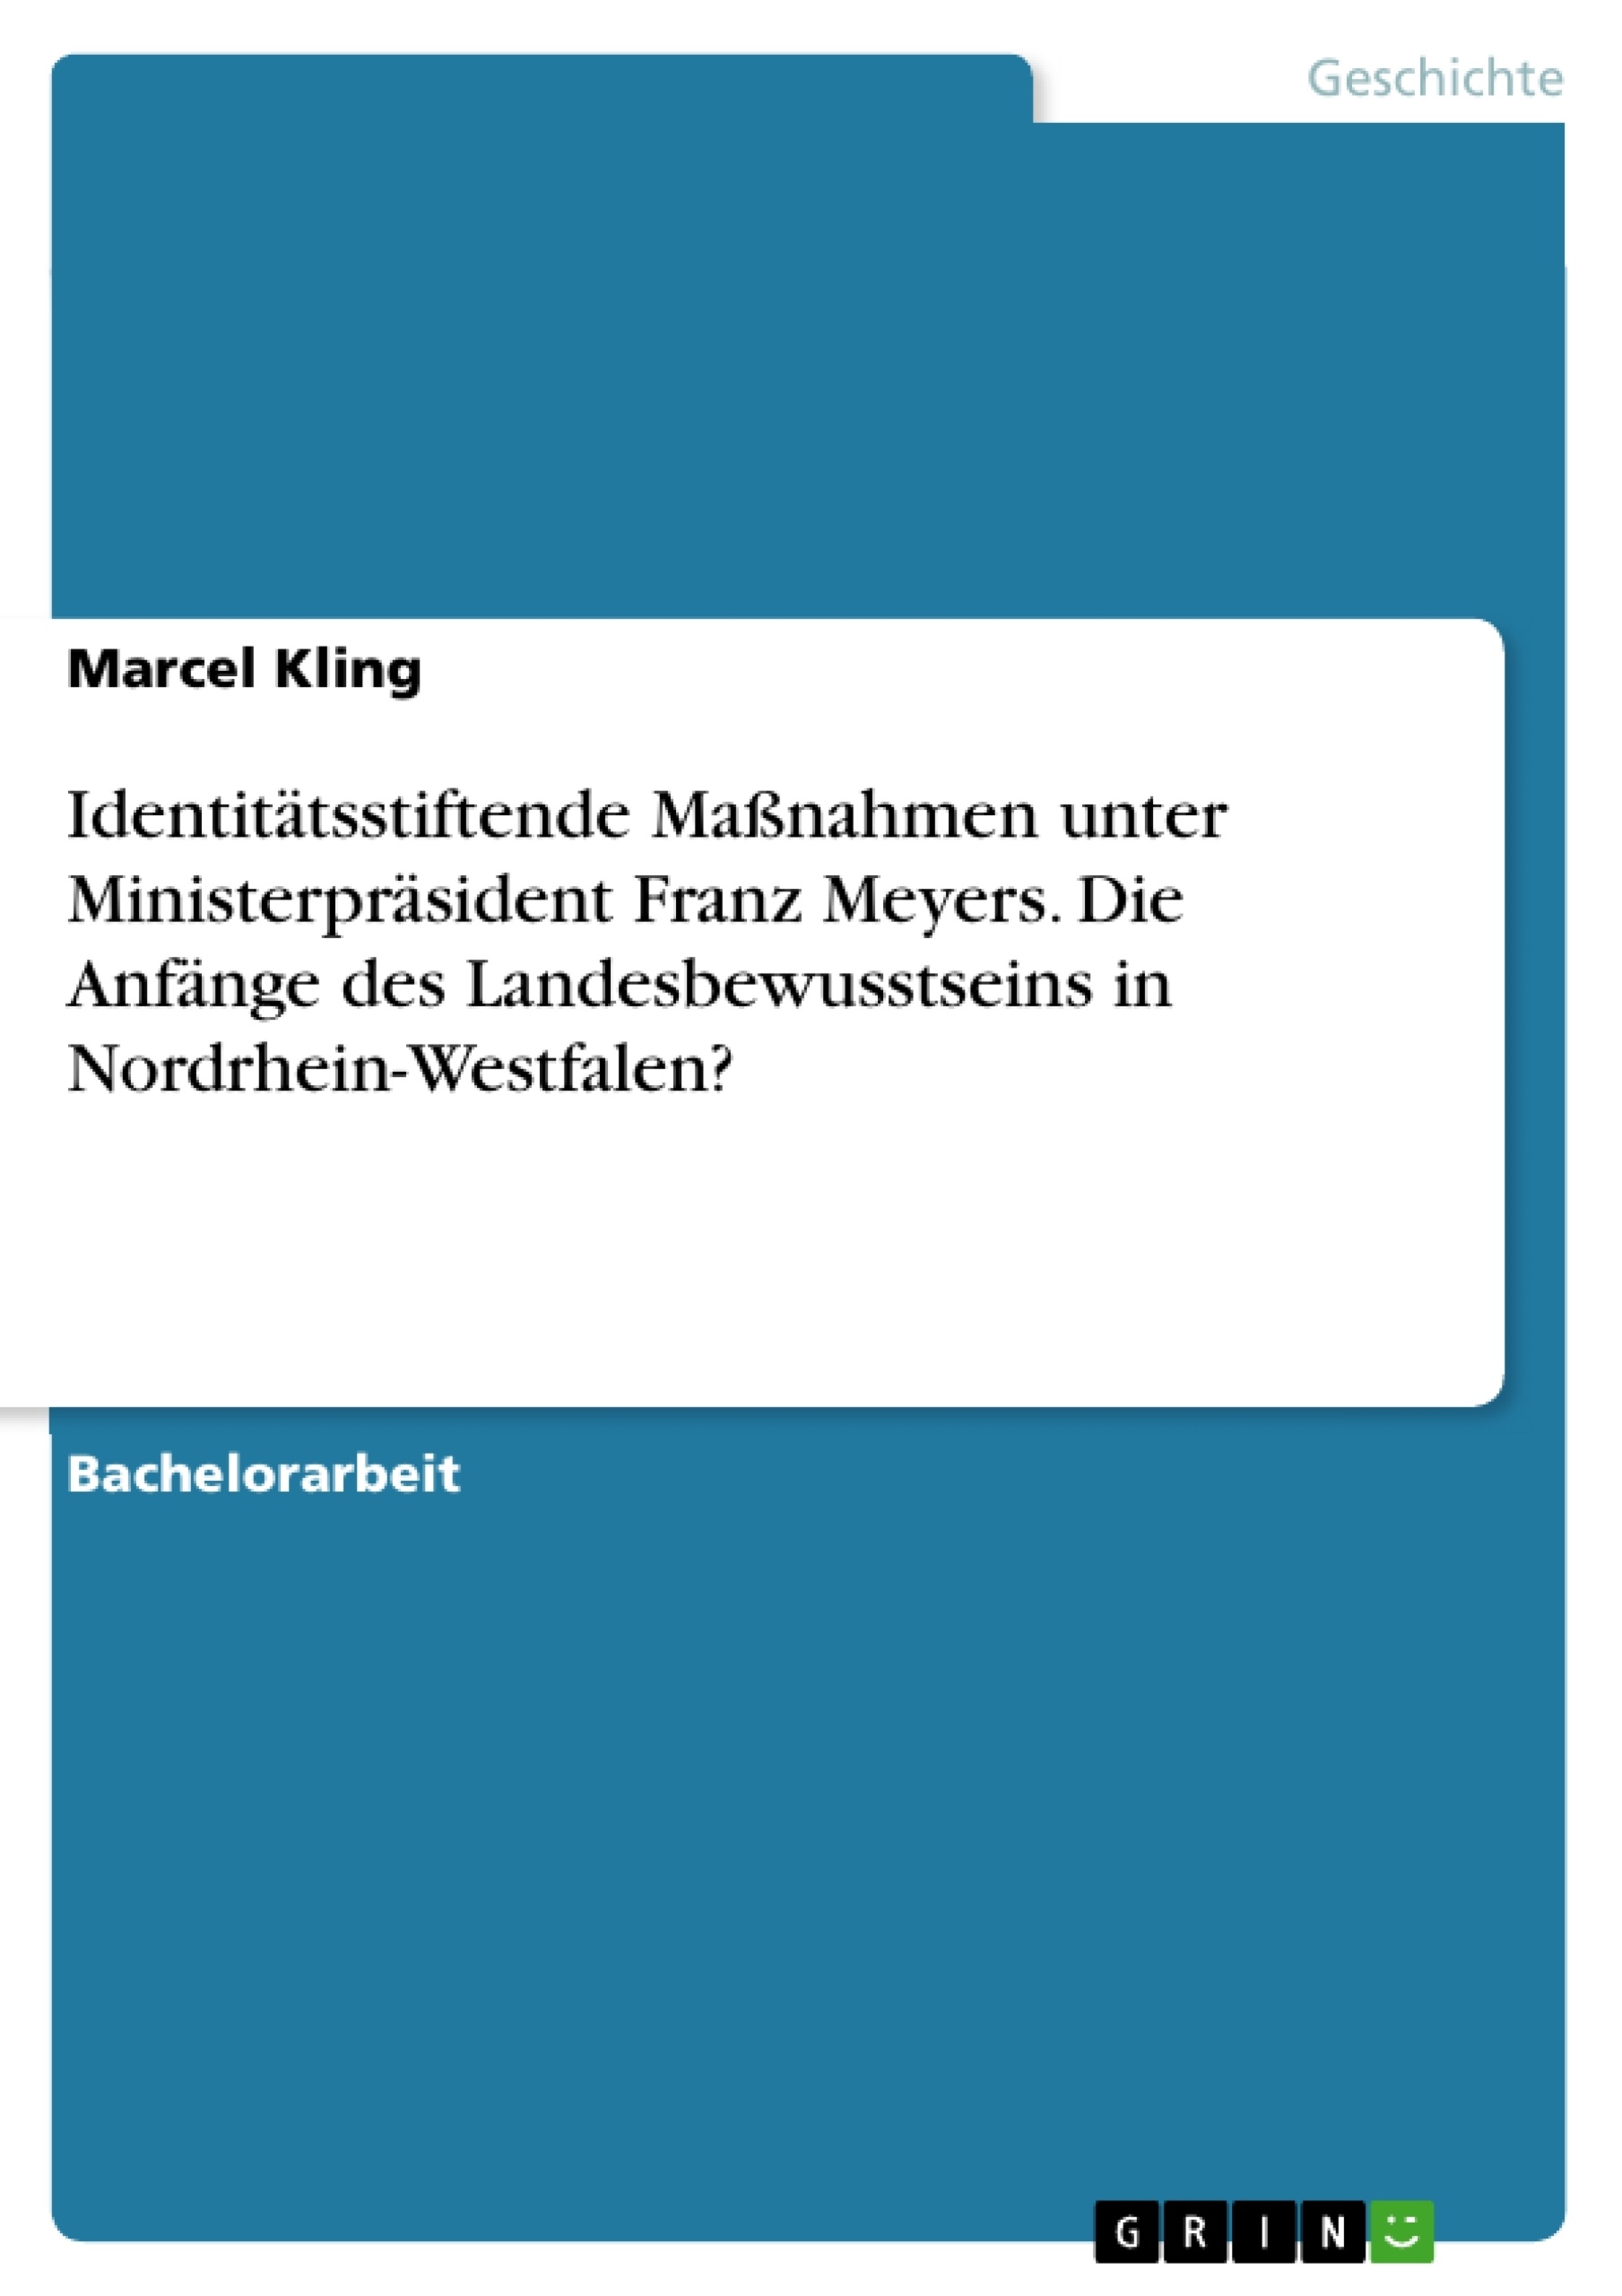 Titre: Identitätsstiftende Maßnahmen unter Ministerpräsident Franz Meyers. Die Anfänge des Landesbewusstseins in Nordrhein-Westfalen?